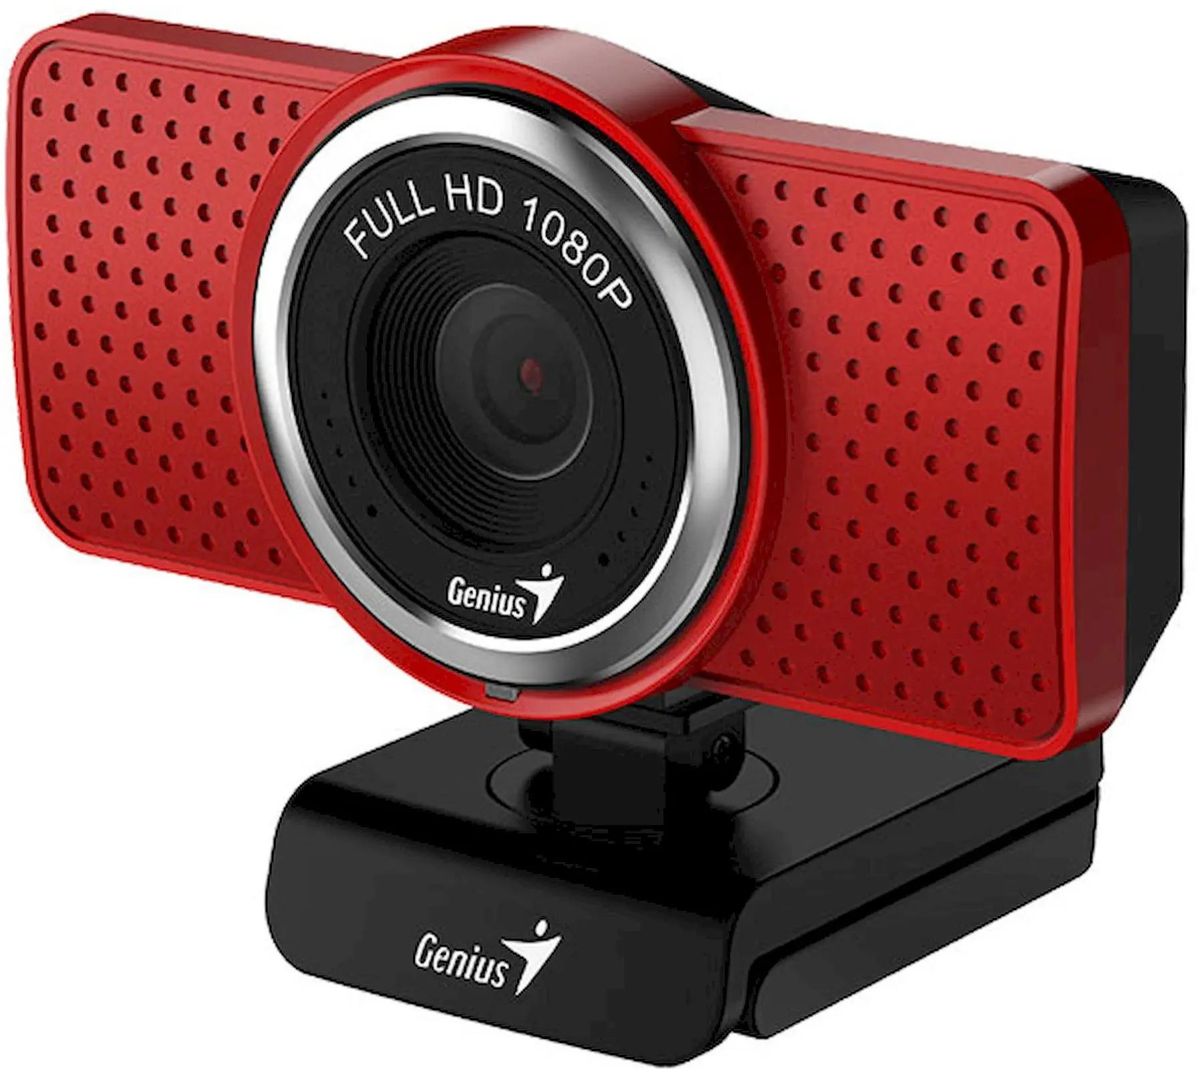 Вебкамера Genius ECam 8000, 2 MP, 1920x1080, встроенный микрофон, USB 2.0, красный/черный (32200001407), цвет красный/черный - фото 1